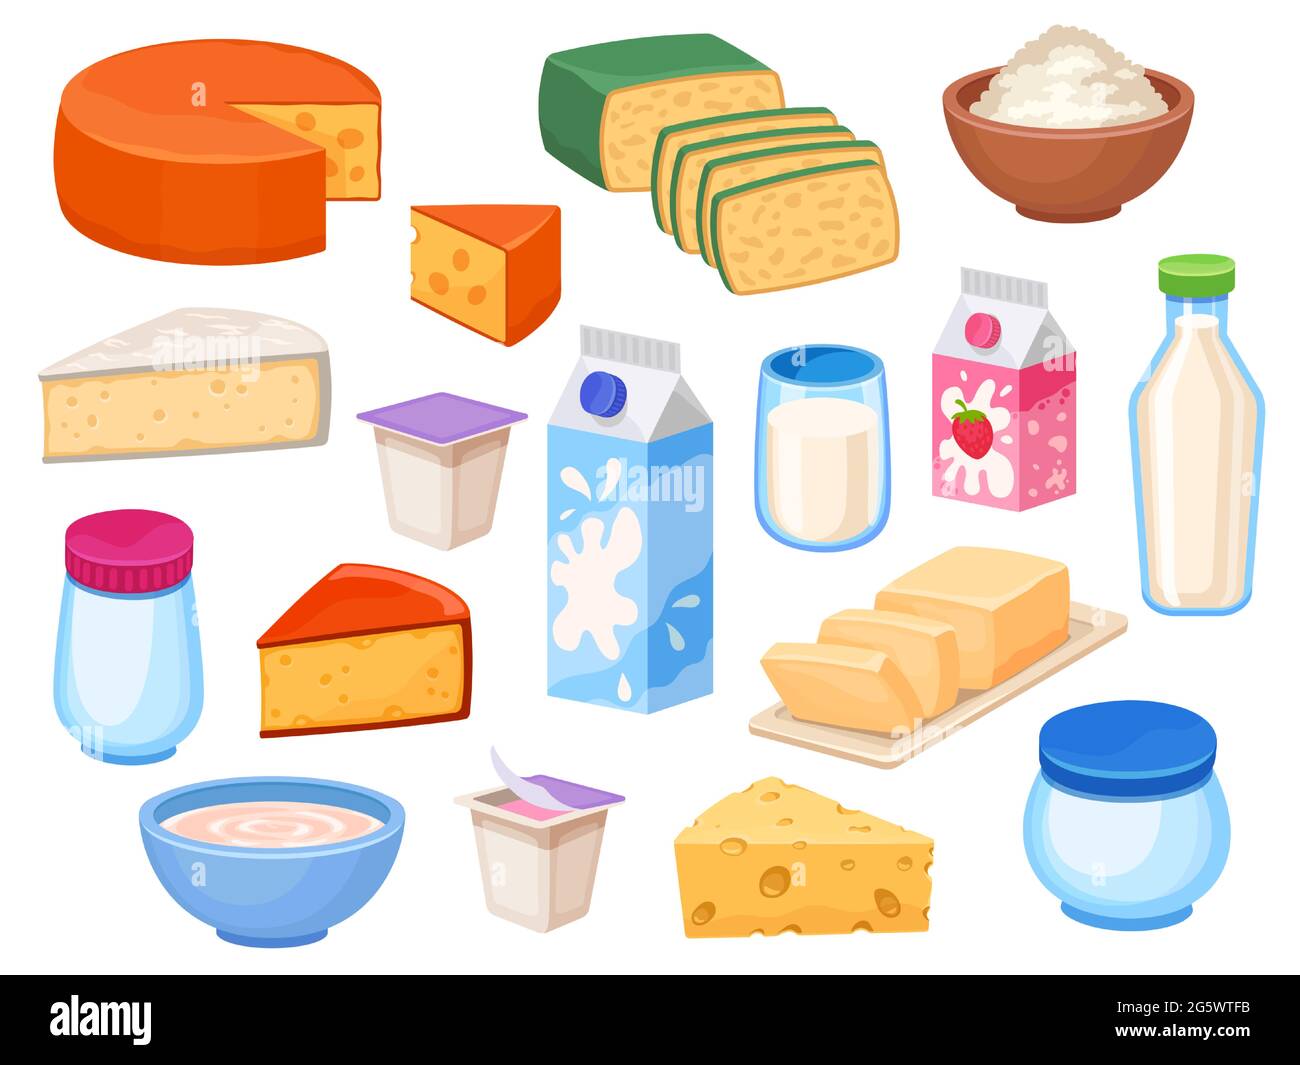 Milchprodukte. Käsescheiben, Milch in Flaschen, Schachtel und Glas, Joghurt, Butter, Quark in Schüssel und Creme. Cartoon Bauernhof milchig Lebensmittel Vektor-Set Stock Vektor